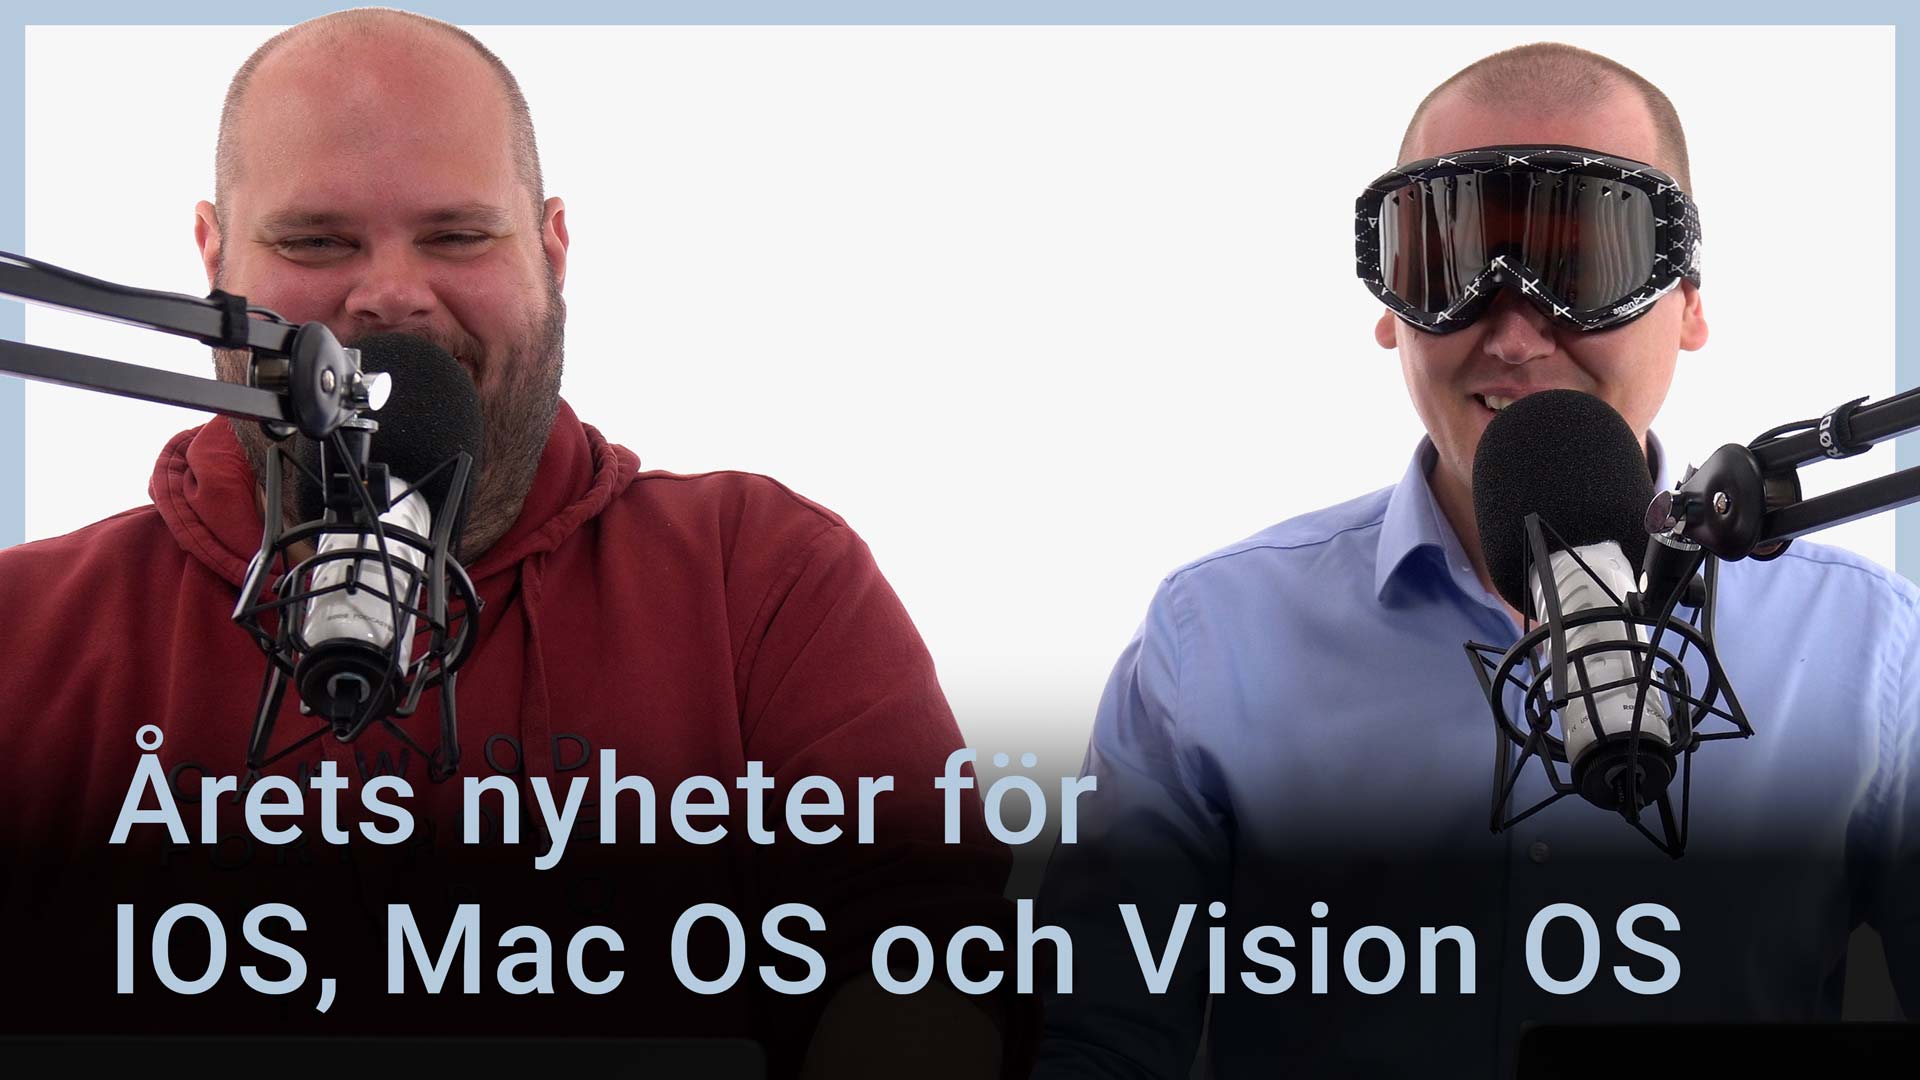 Peter Esse och Karl Emil Nikka står vid varsin mikrofon. Texten ”Årets nyheter för IOS, Mac OS och Vision OS” står ovanpå.